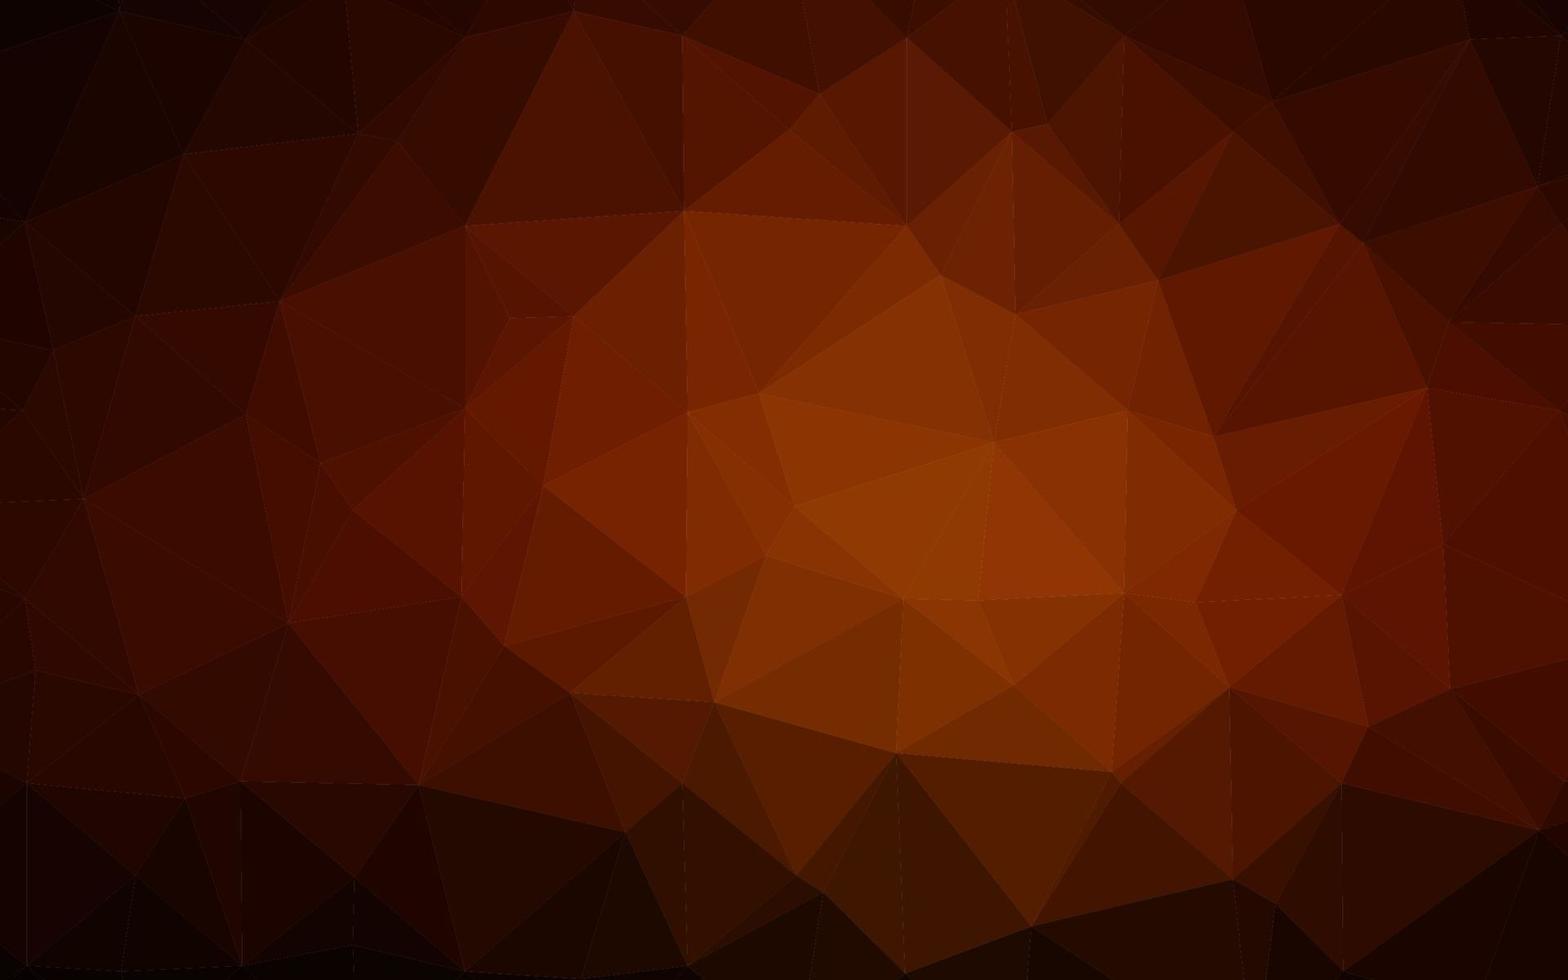 textura poligonal abstracta de vector rojo oscuro, amarillo.